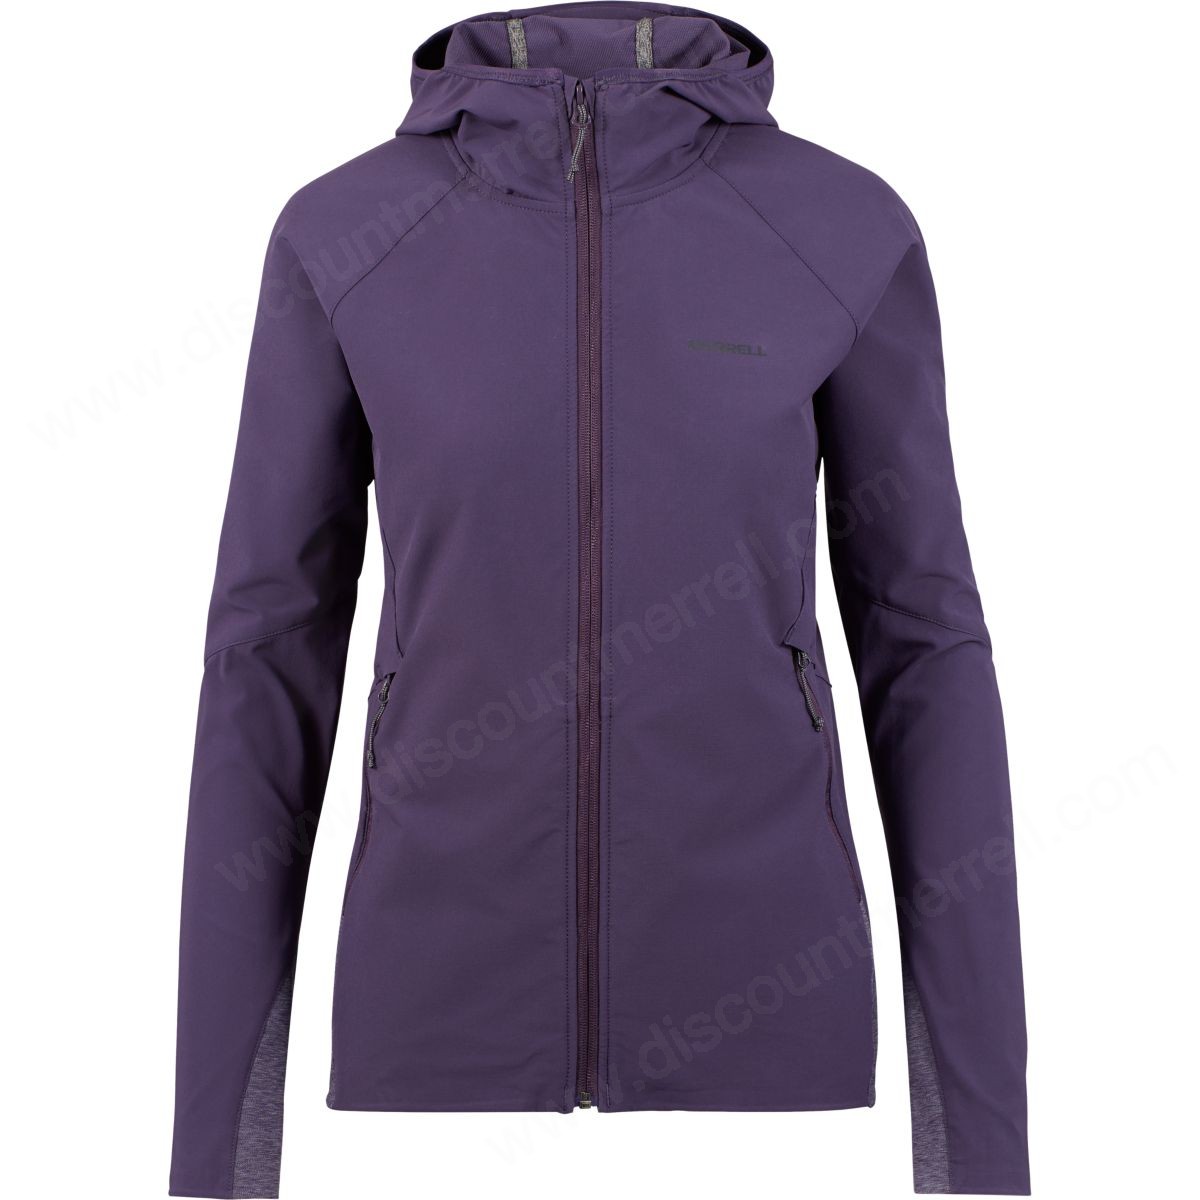 Merrell Woman's Stapleton Softshell Jacket Purple Velvet - -0